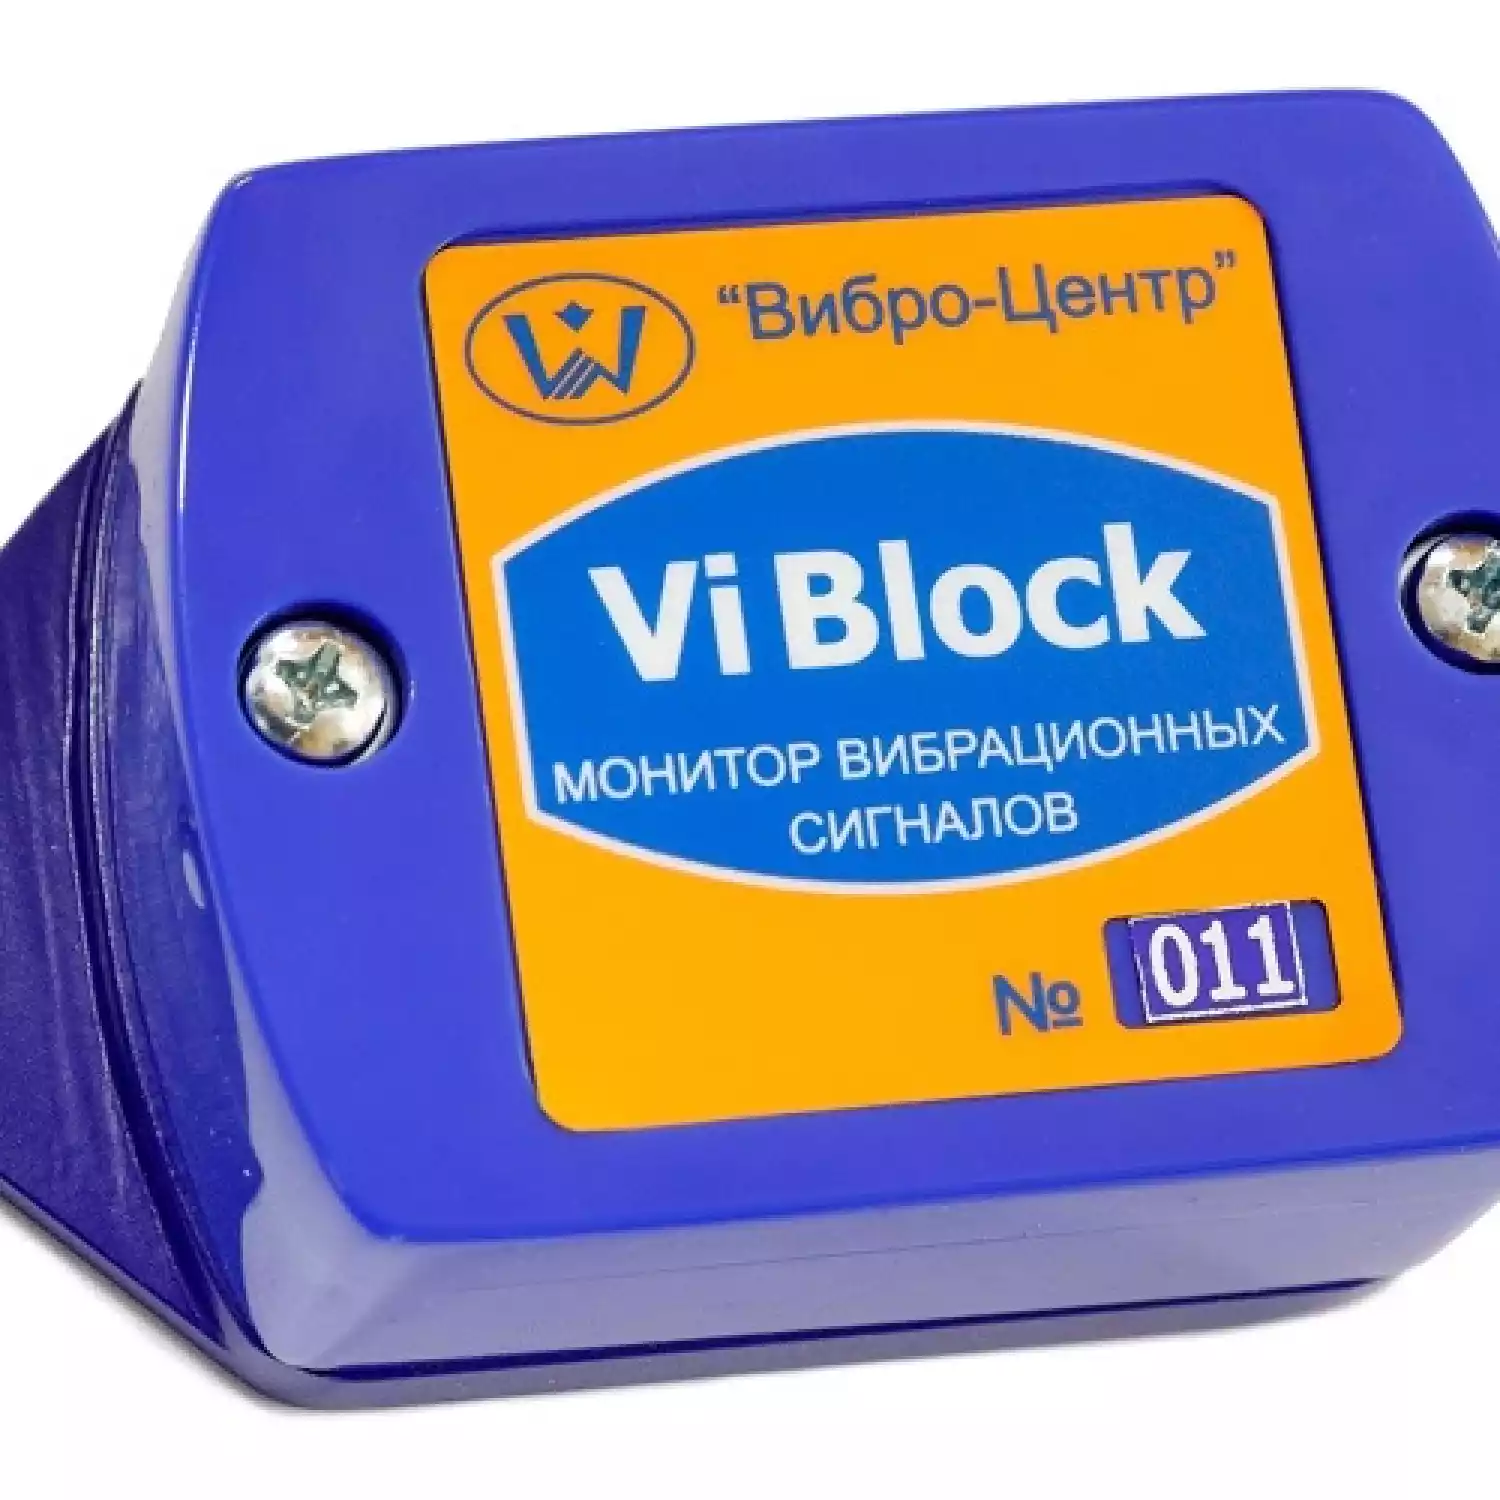 Беспроводная система ViBlock - 1